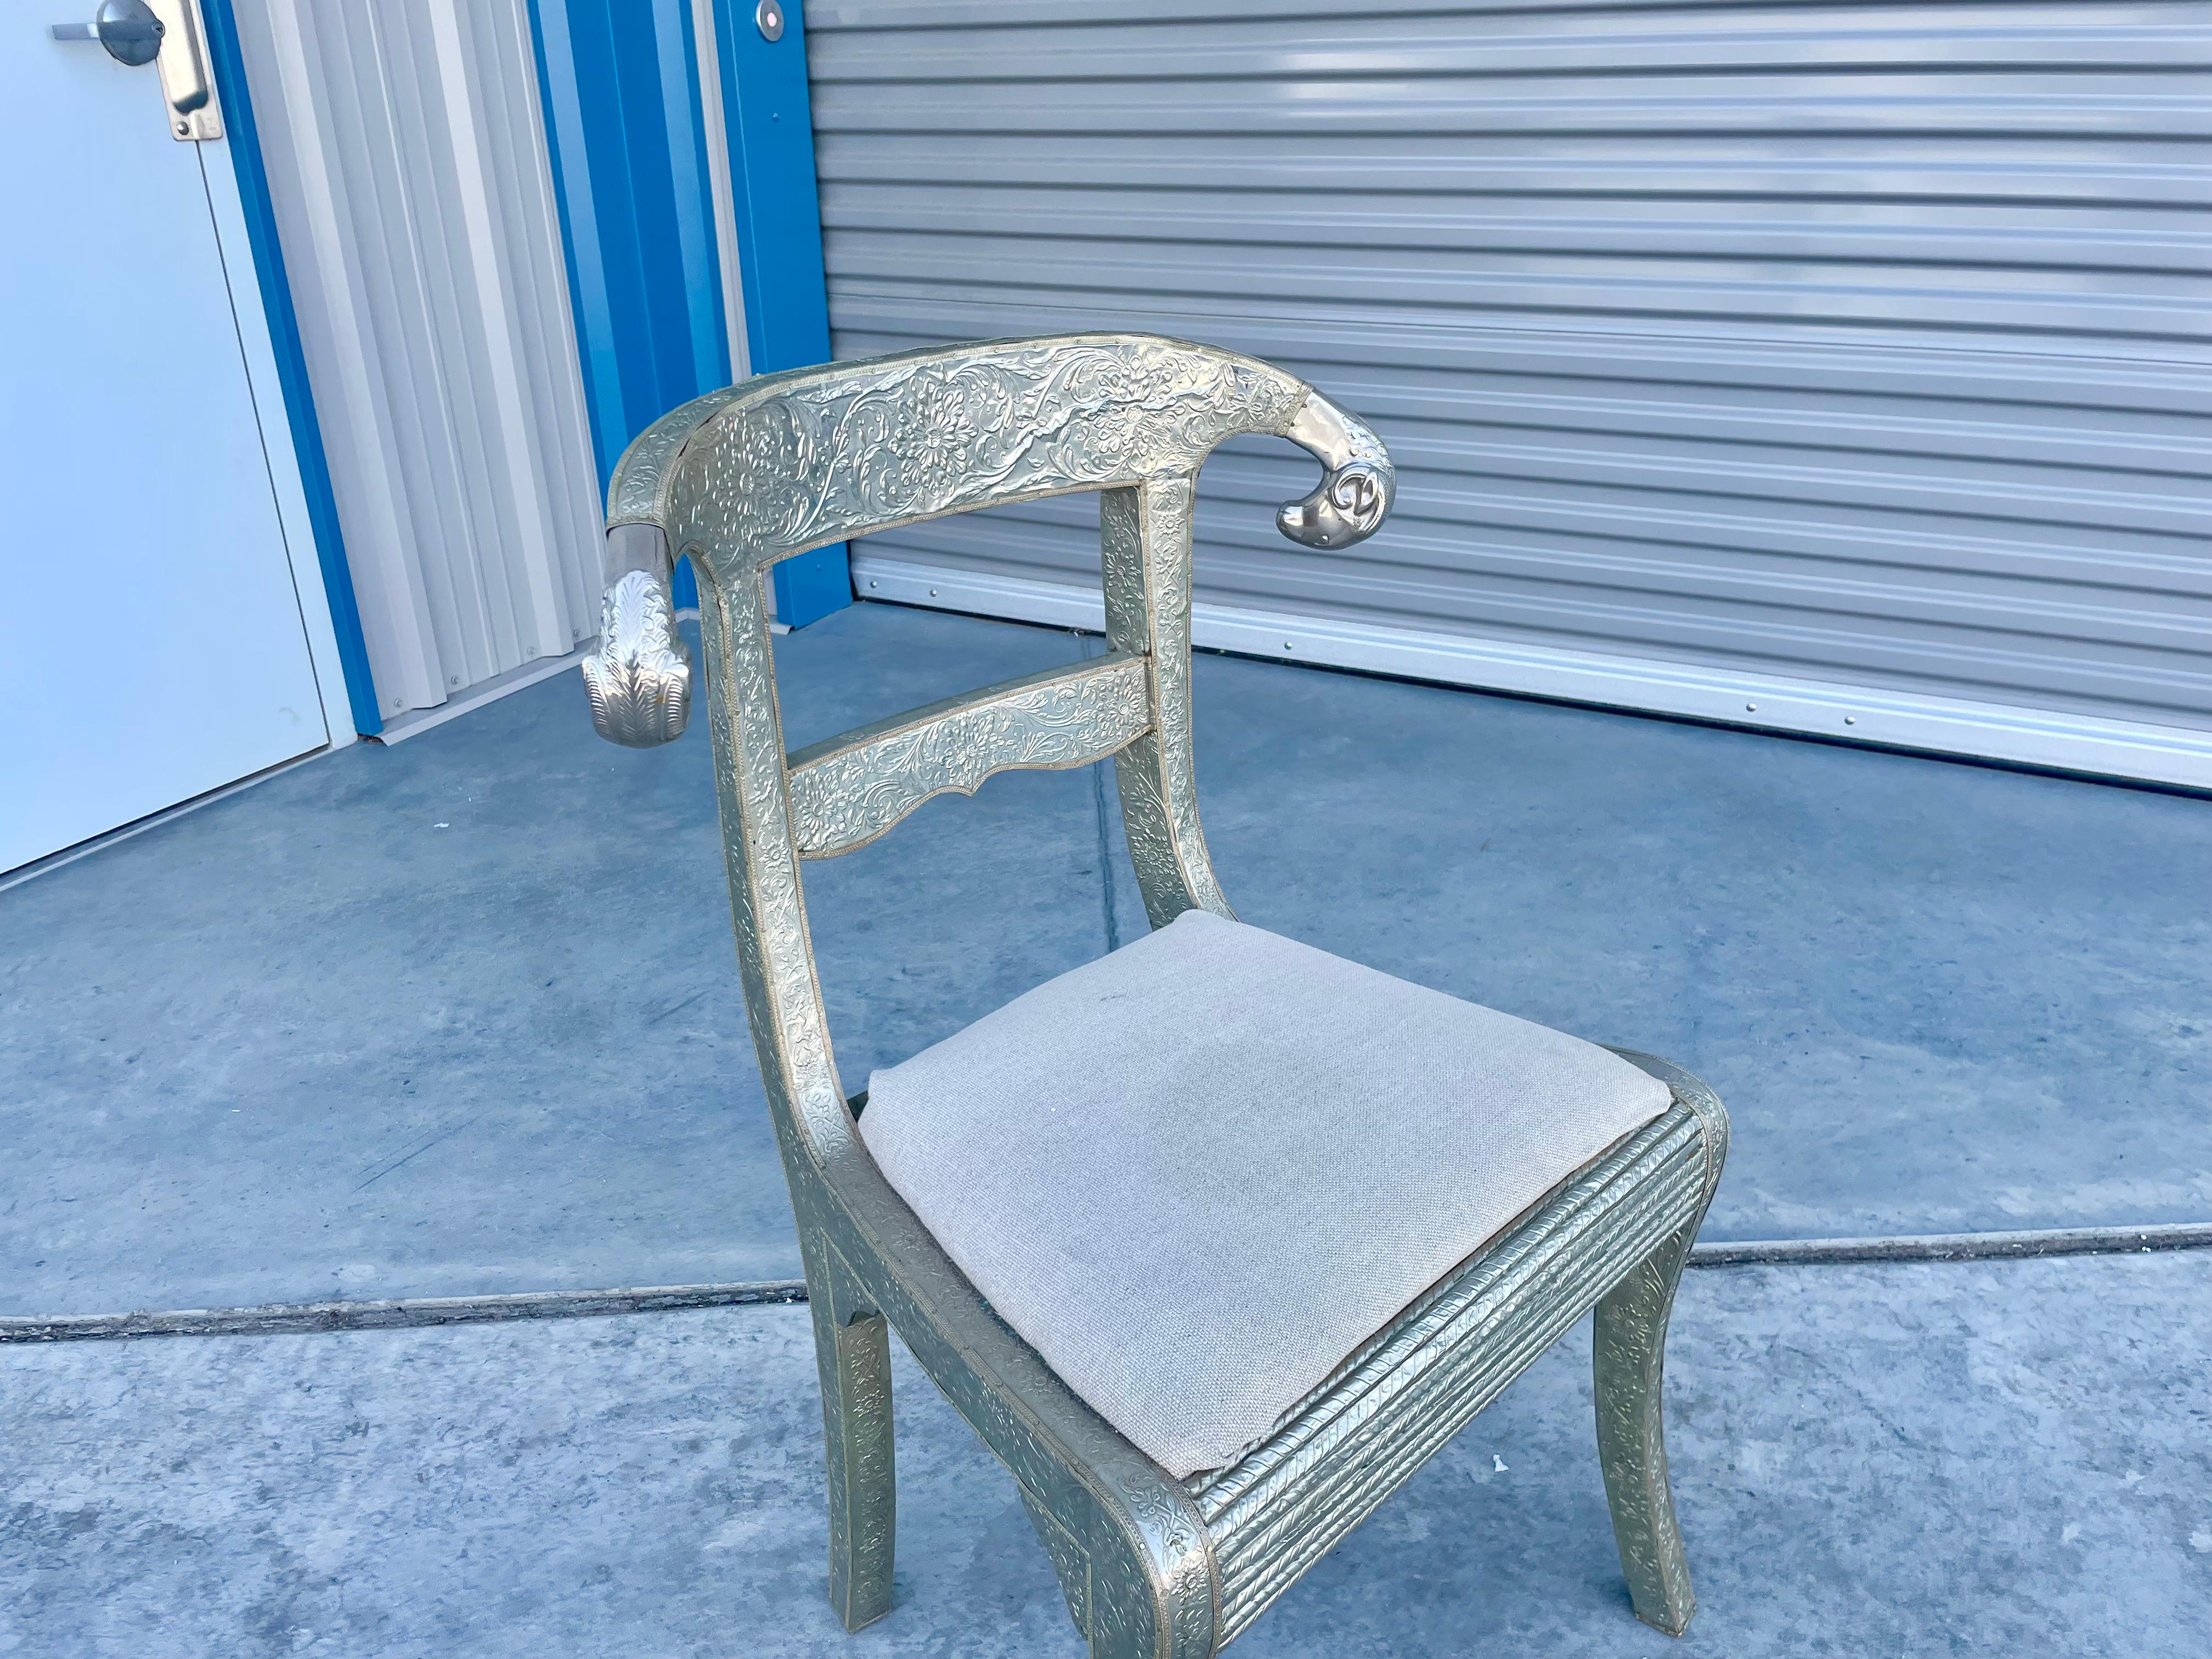 Vintage-Stuhl mit Metallumhüllung, entworfen und hergestellt in Indien, ca. 1980er Jahre. Dieser schöne Stuhl wird auch als Hochzeitsstuhl bezeichnet. Der mit silbernem Metall ummantelte Holzrahmen und die polierten Widderköpfe an den Seiten